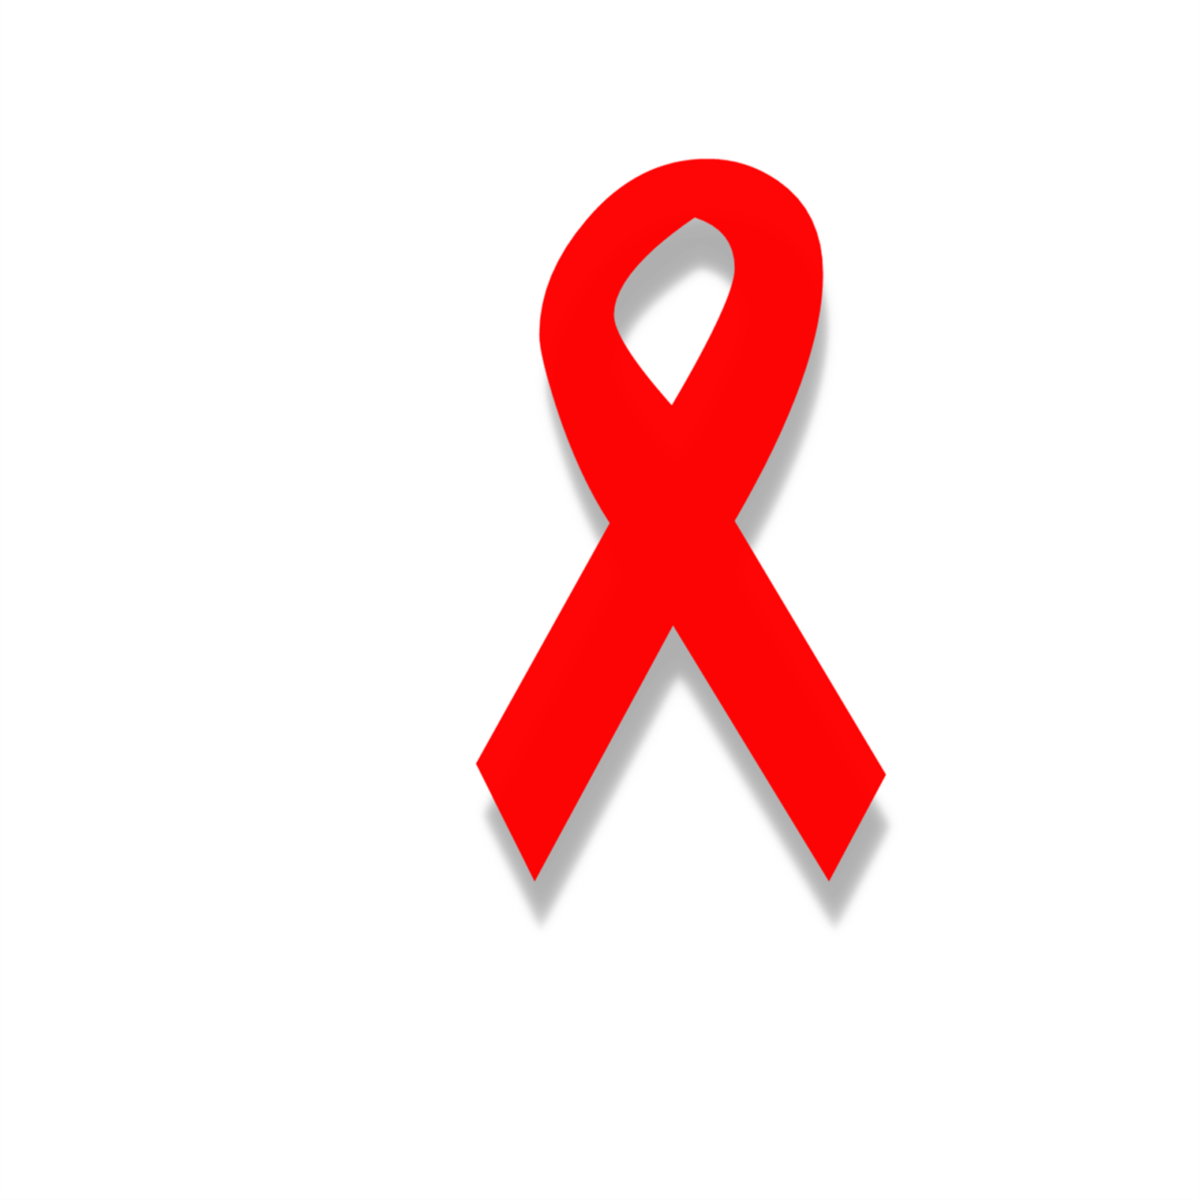 czerwona wstazka aids hiv